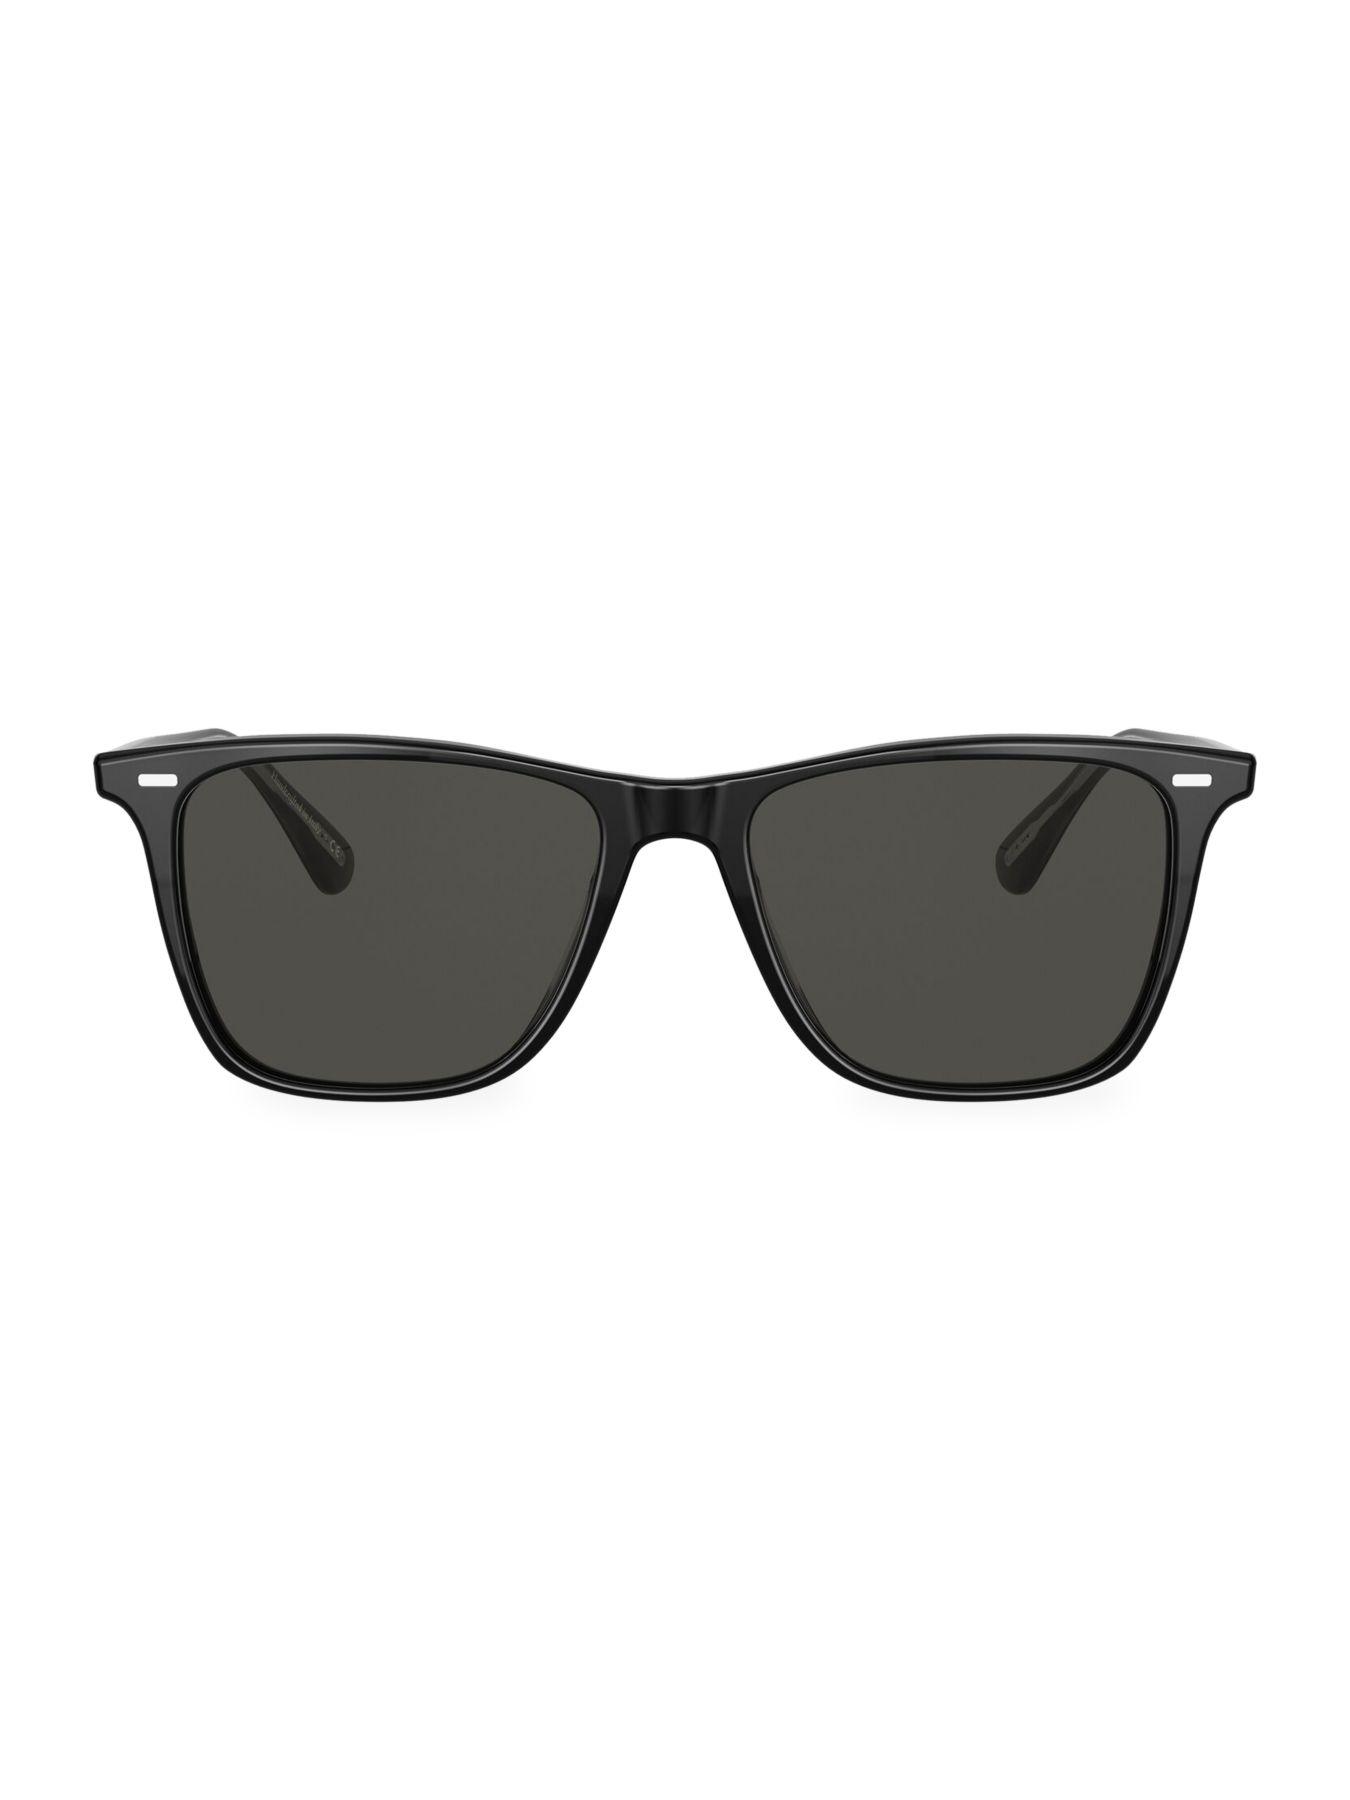 Oliver Peoples Ollis 54mm Wayfarer Sunglasses in Black for Men - Lyst